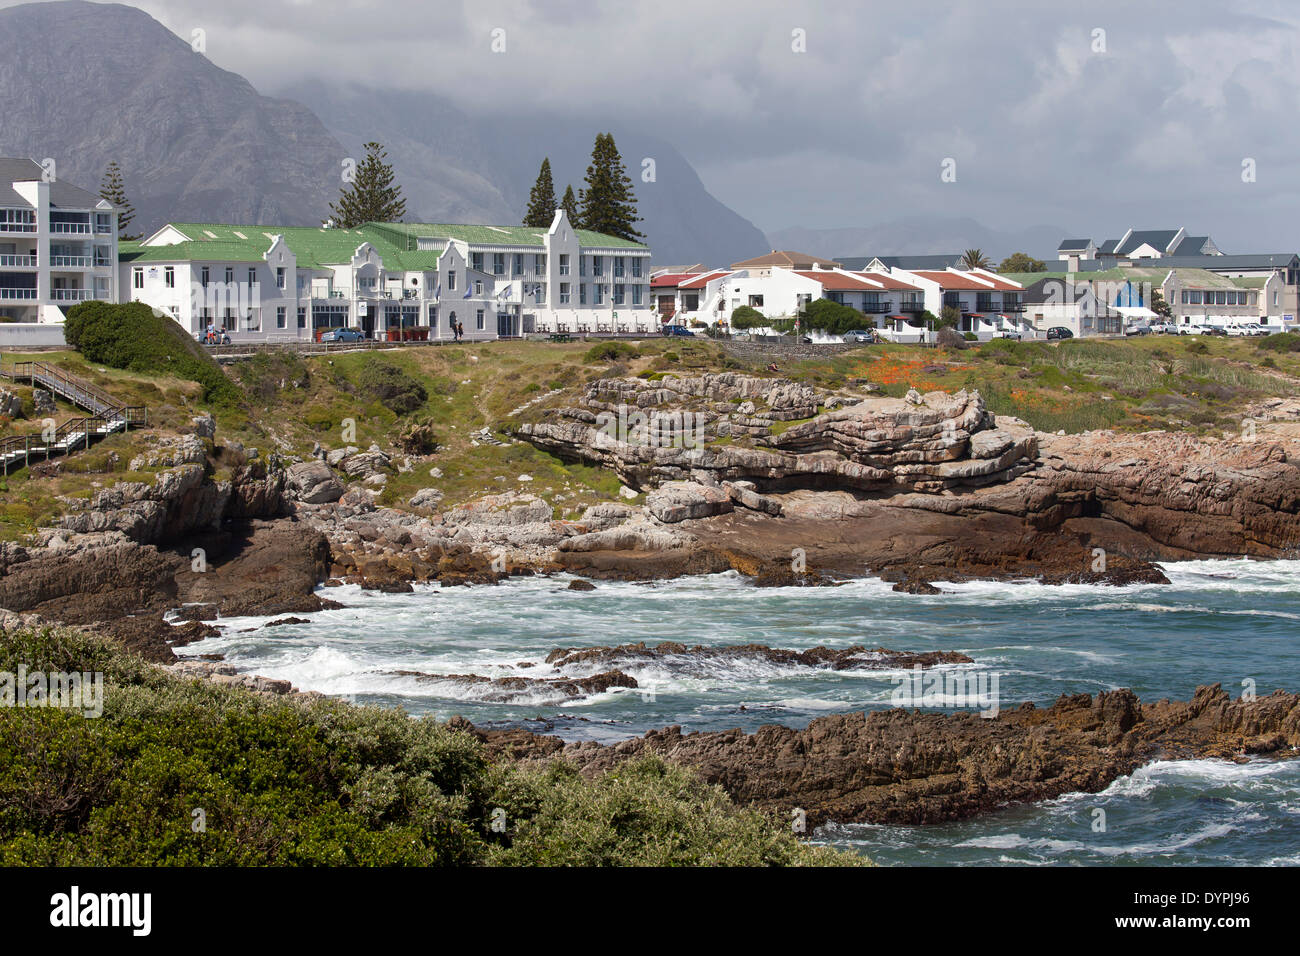 La côte rocheuse et d'hôtels à Hermanus, Western Cape, Afrique du Sud Banque D'Images